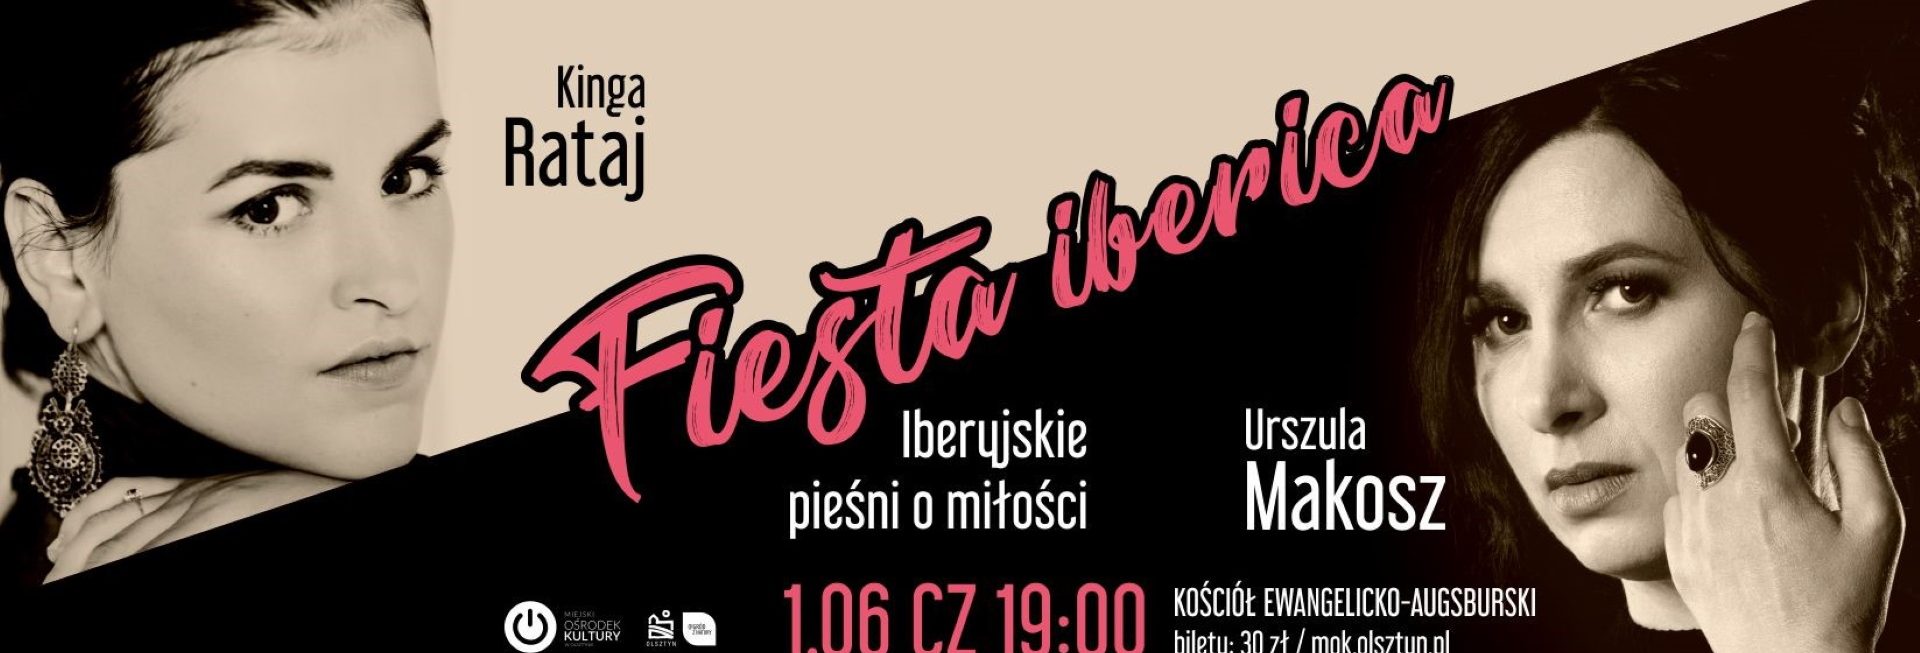 Plakat zapraszający w czwartek 1 czerwca 2023 r. do Olsztyna na Koncert Urszula MAKOSZ & Kinga RATAJ "Fiesta iberica" Olsztyn 2023.